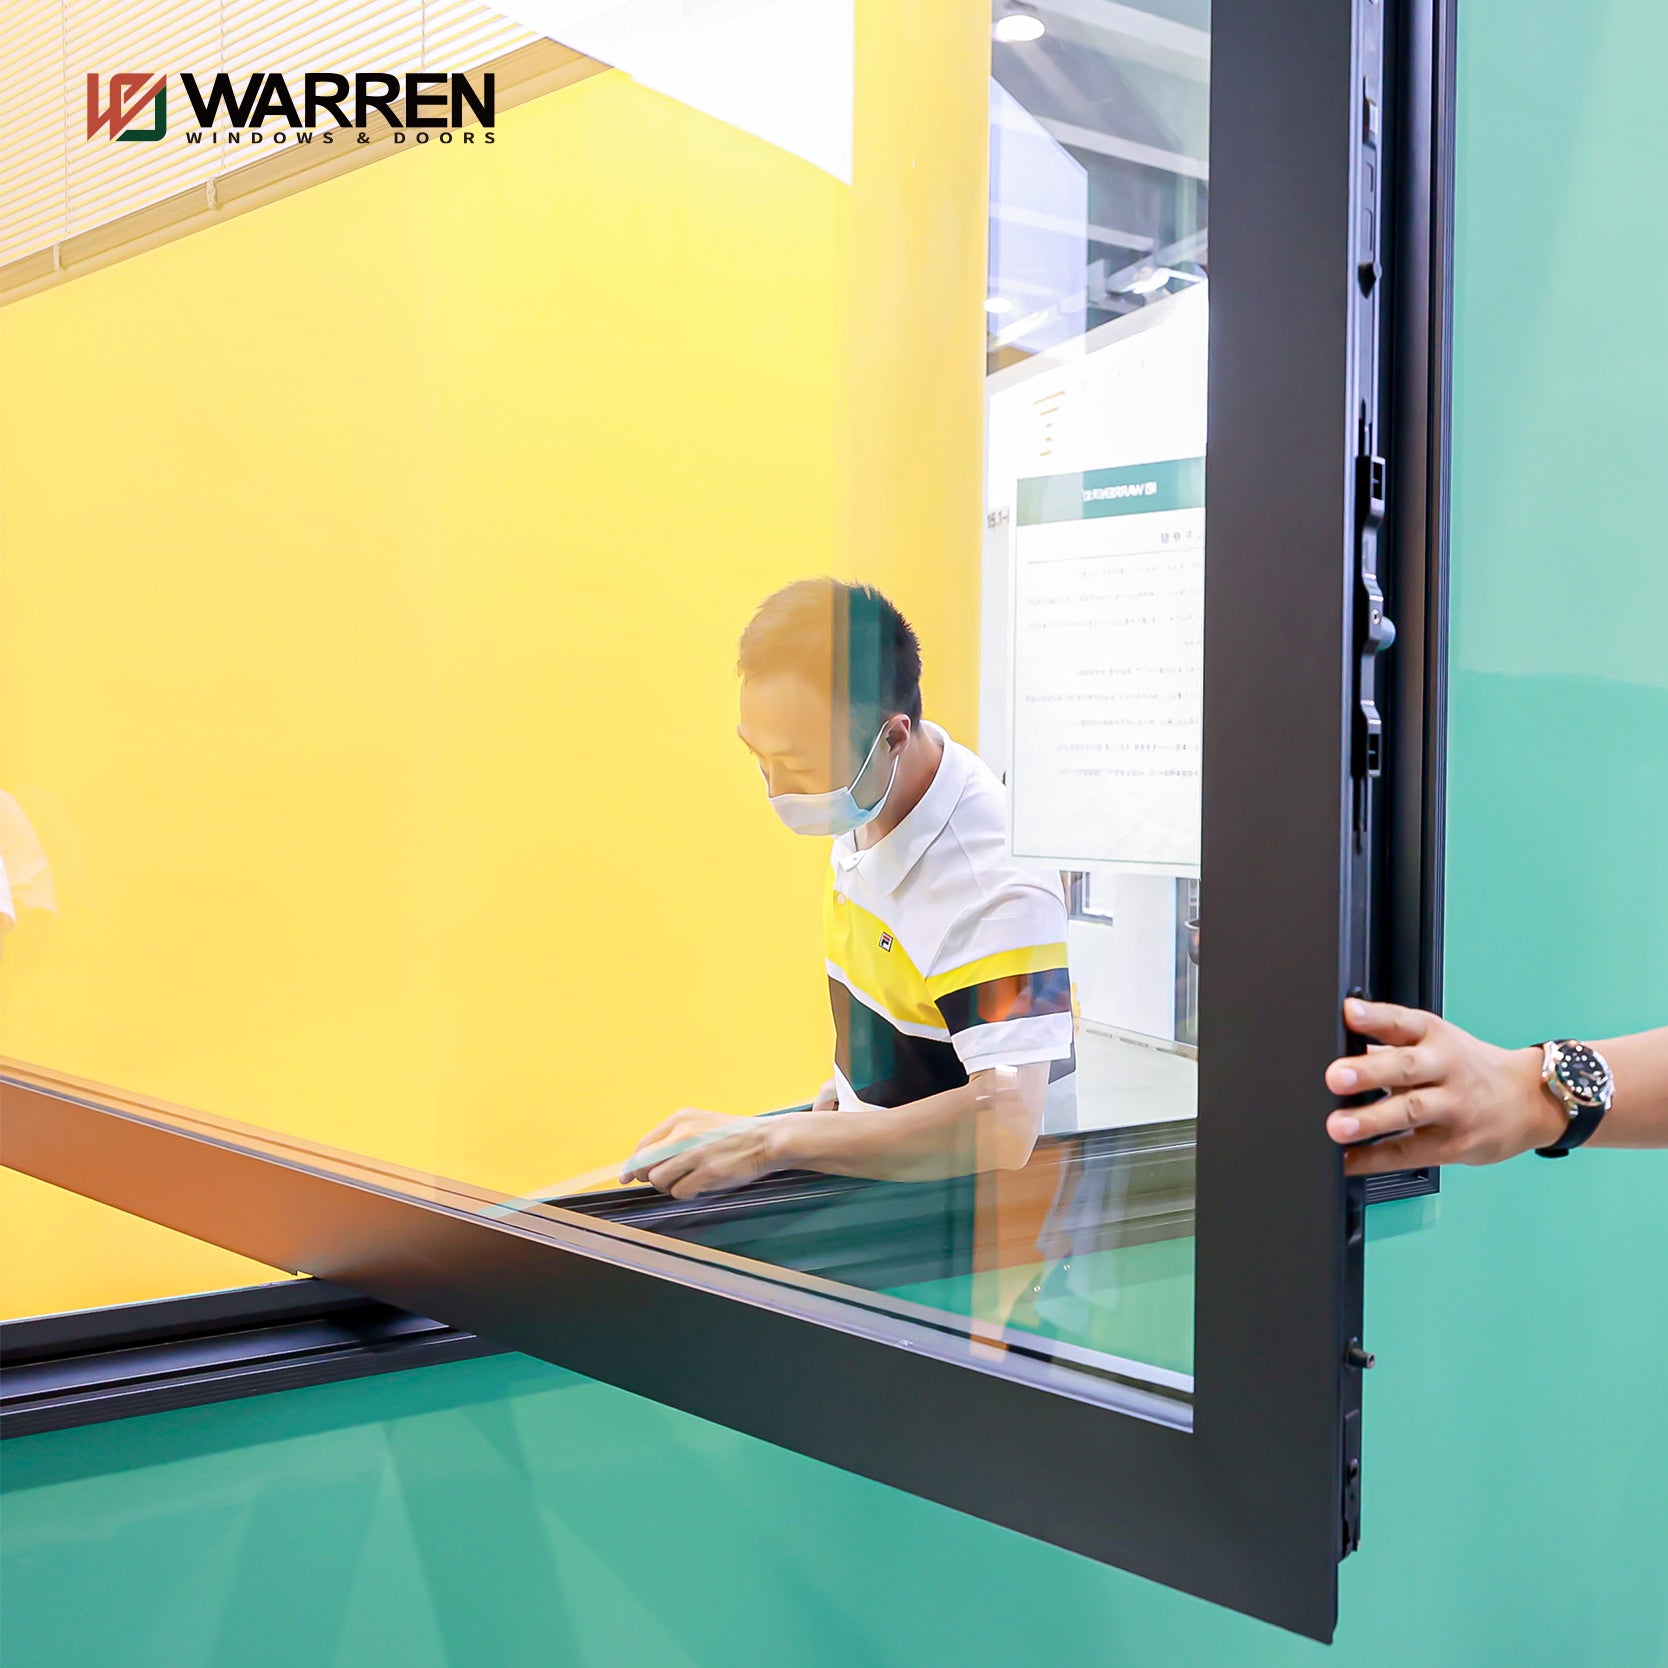 Warren Customized Professional Aluminium Alloy Horizontal Casement Window Aluminium Single Hung Casement Window